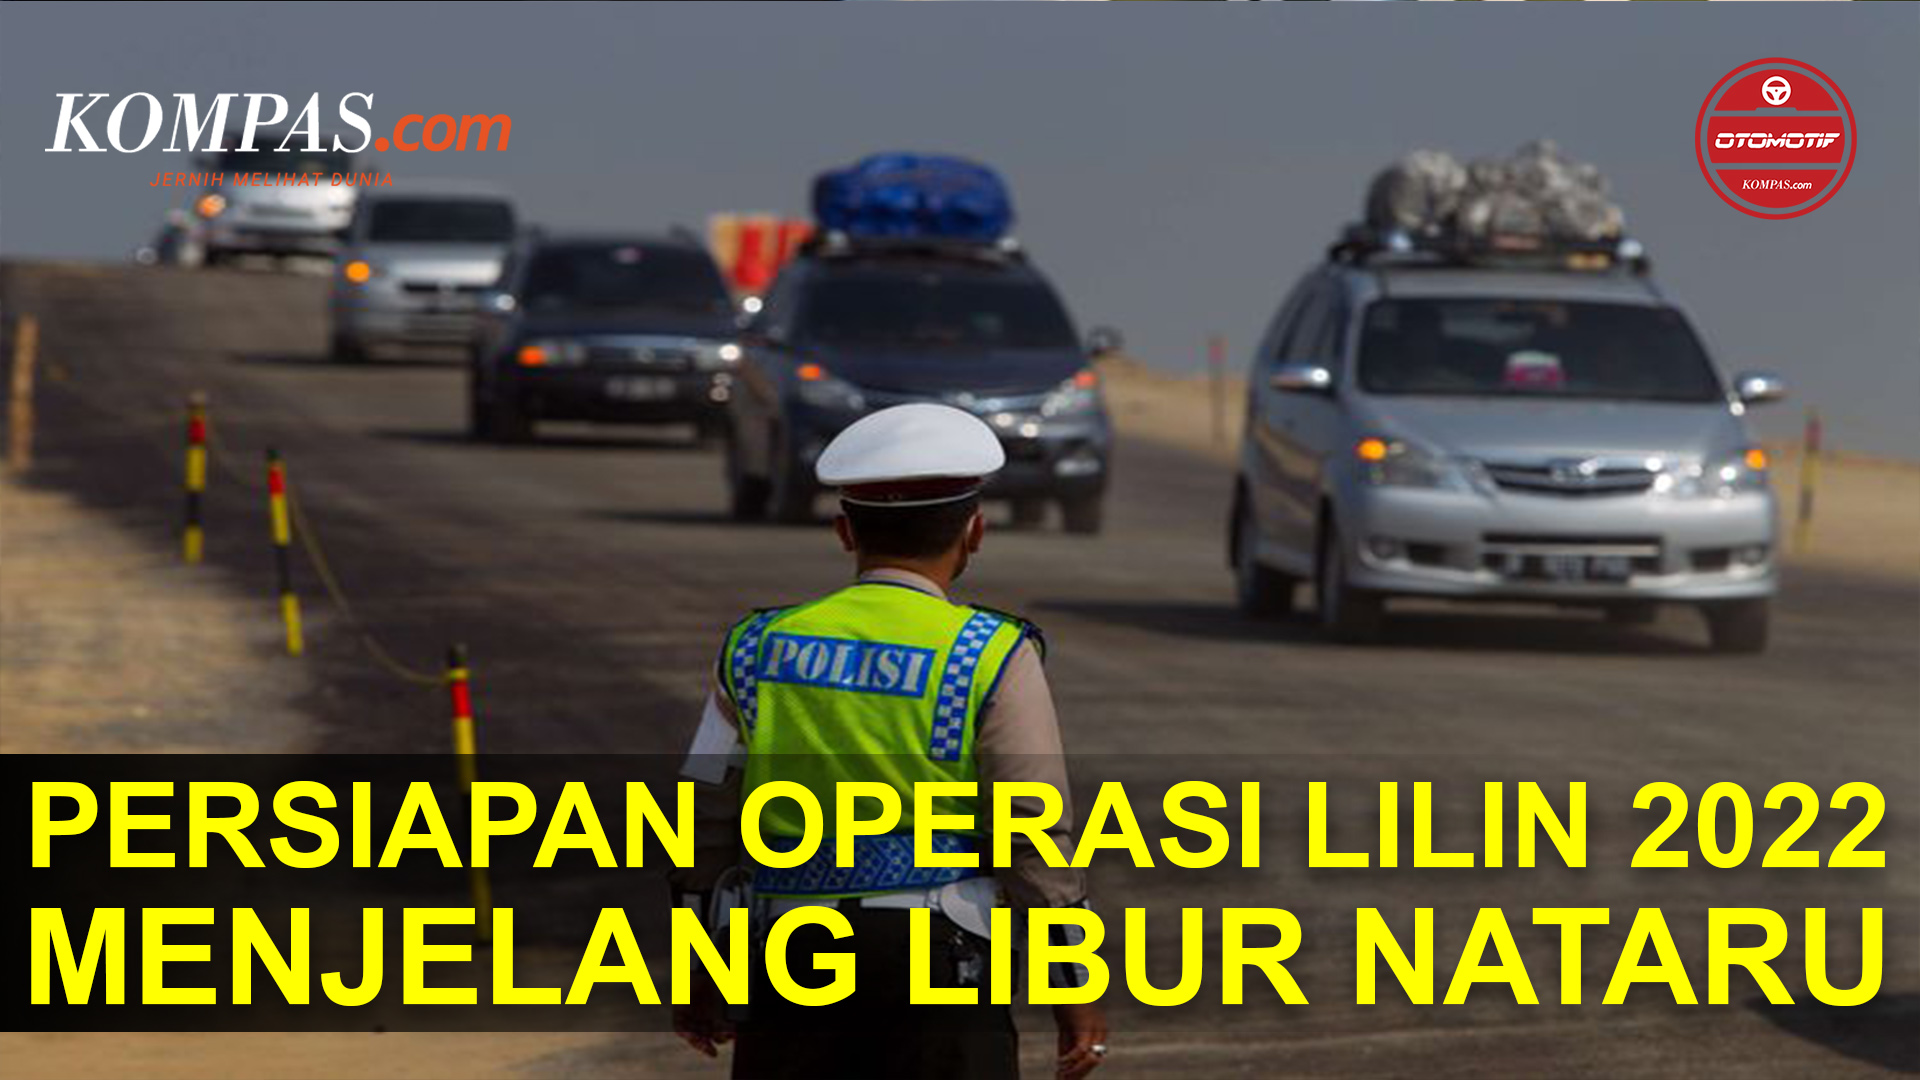 Jelang Libur Nataru, Polisi Cek Persiapan Operasi Lilin 2022